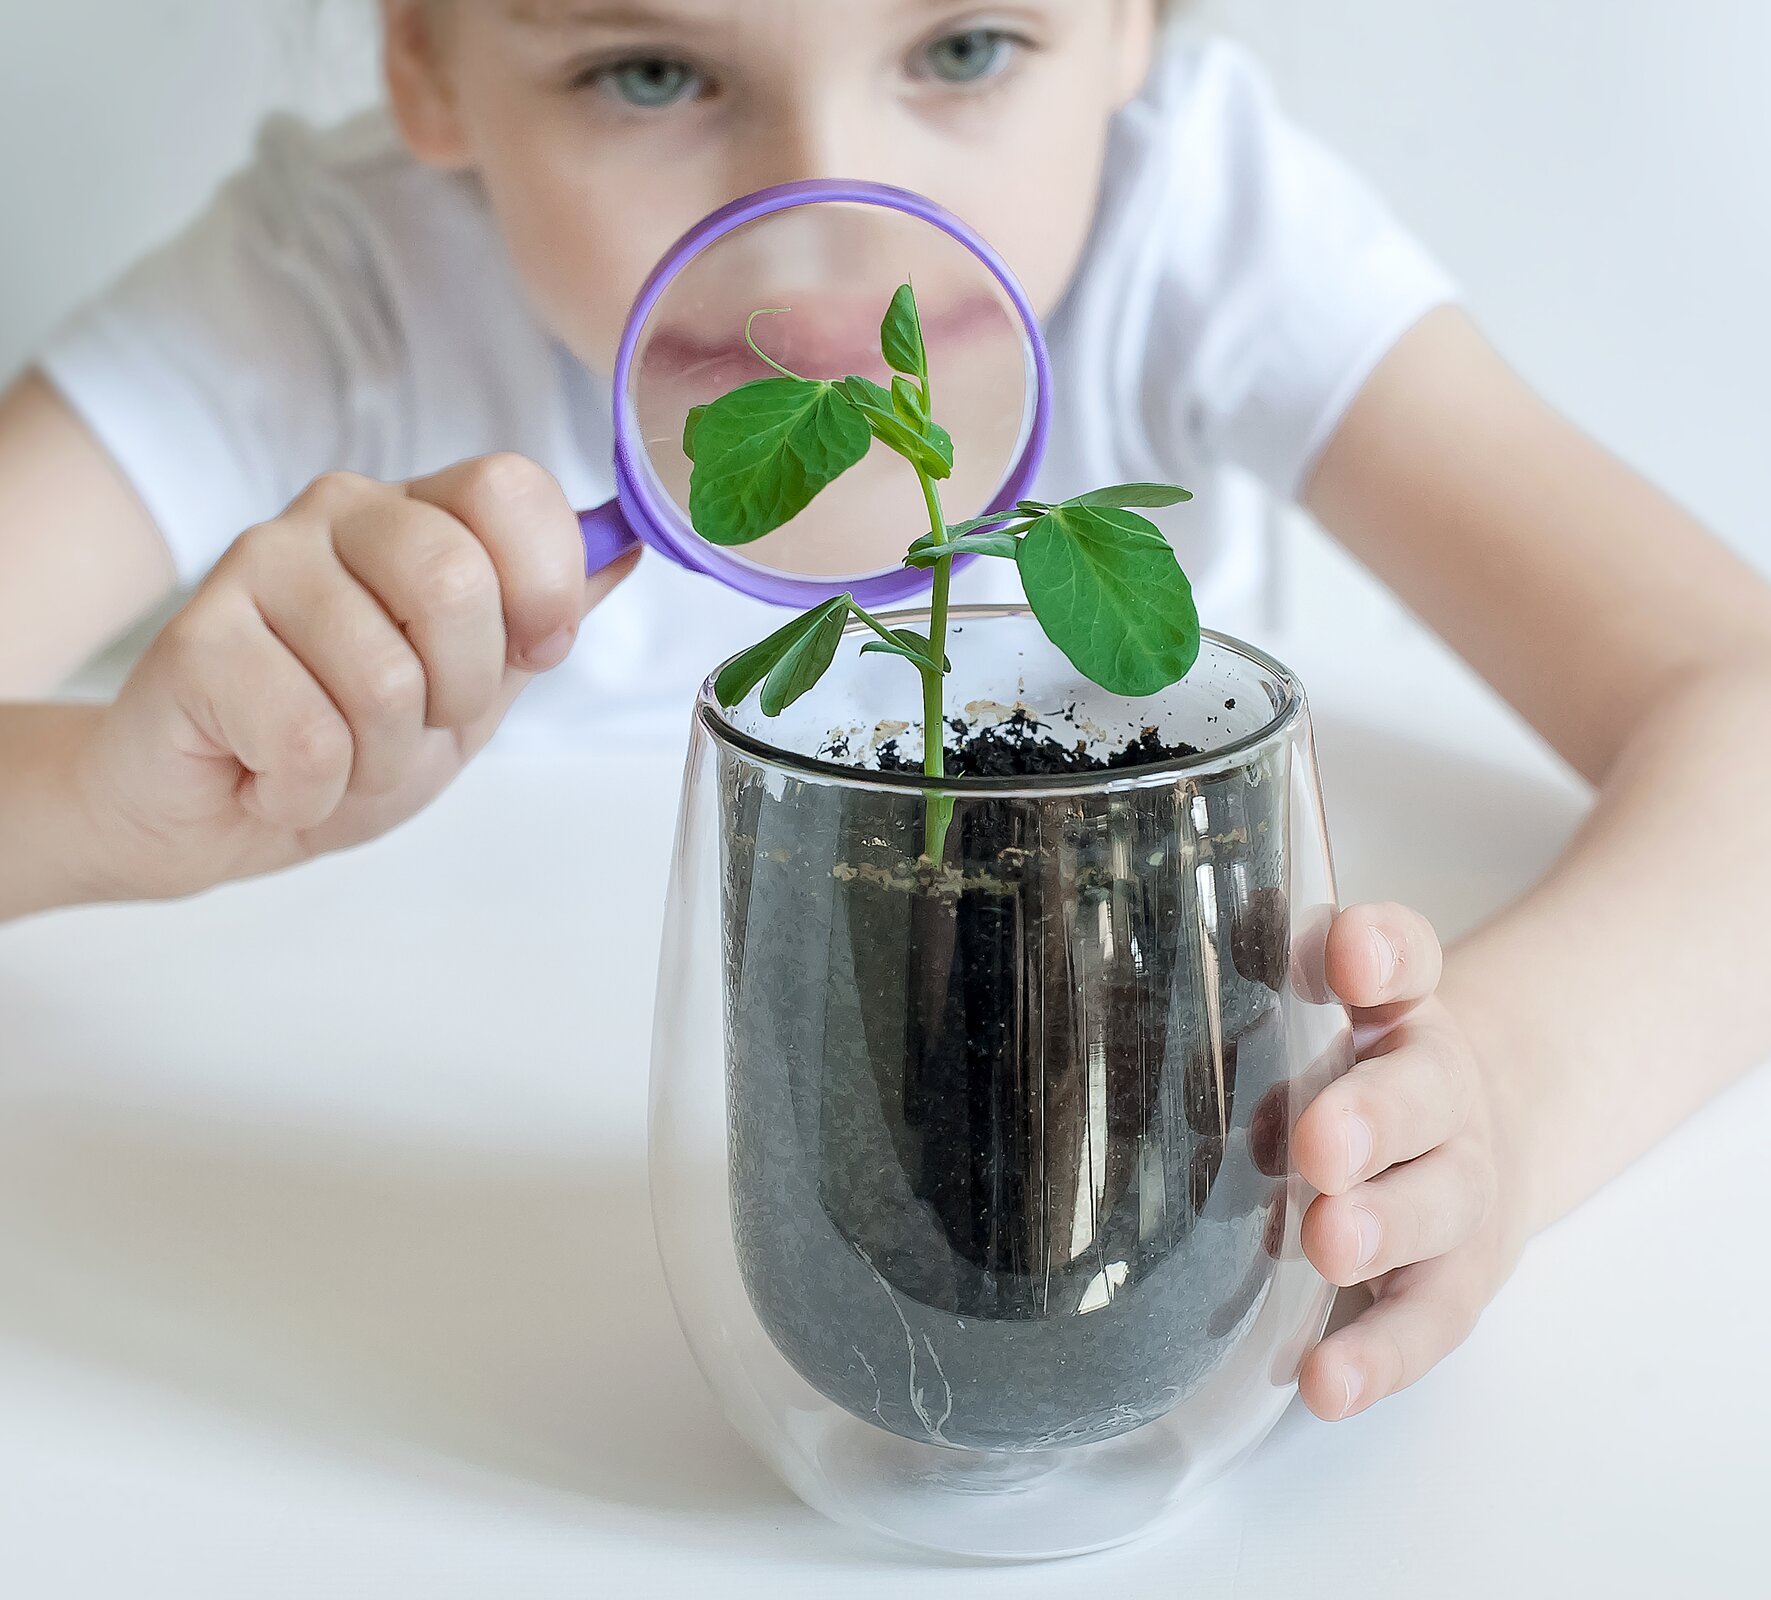 Zdjęcie przedstawia dziecko oglądające roślinę przez szkło powiększające. Na pierwszym planie jest szklane naczynie z ziemią, z której wyrasta niewielka zielona łodyga z kilkoma listkami po obydwu jej stronach. Na drugim planie jest dziecko, które przygląda się roślinie przez lupę, trzymaną w prawej dłoni, lewą dłonią trzyma naczynie.